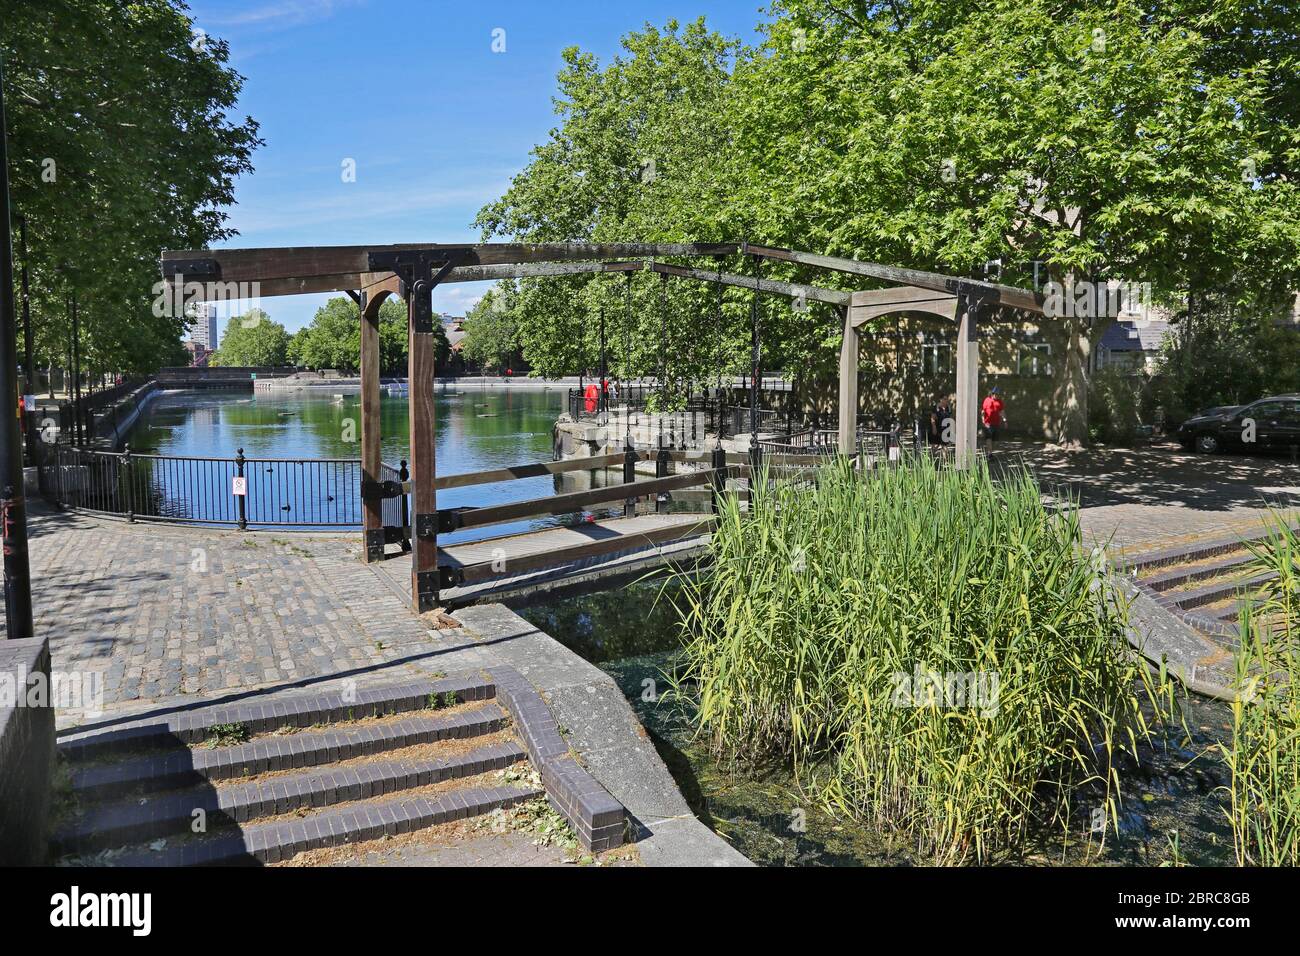 Canal piéton de style hollandais à pont Canada Water, Londres. Un nouveau secteur résidentiel s'est développé dans les années 1980 sur le site des anciens Surrey Docks. Banque D'Images